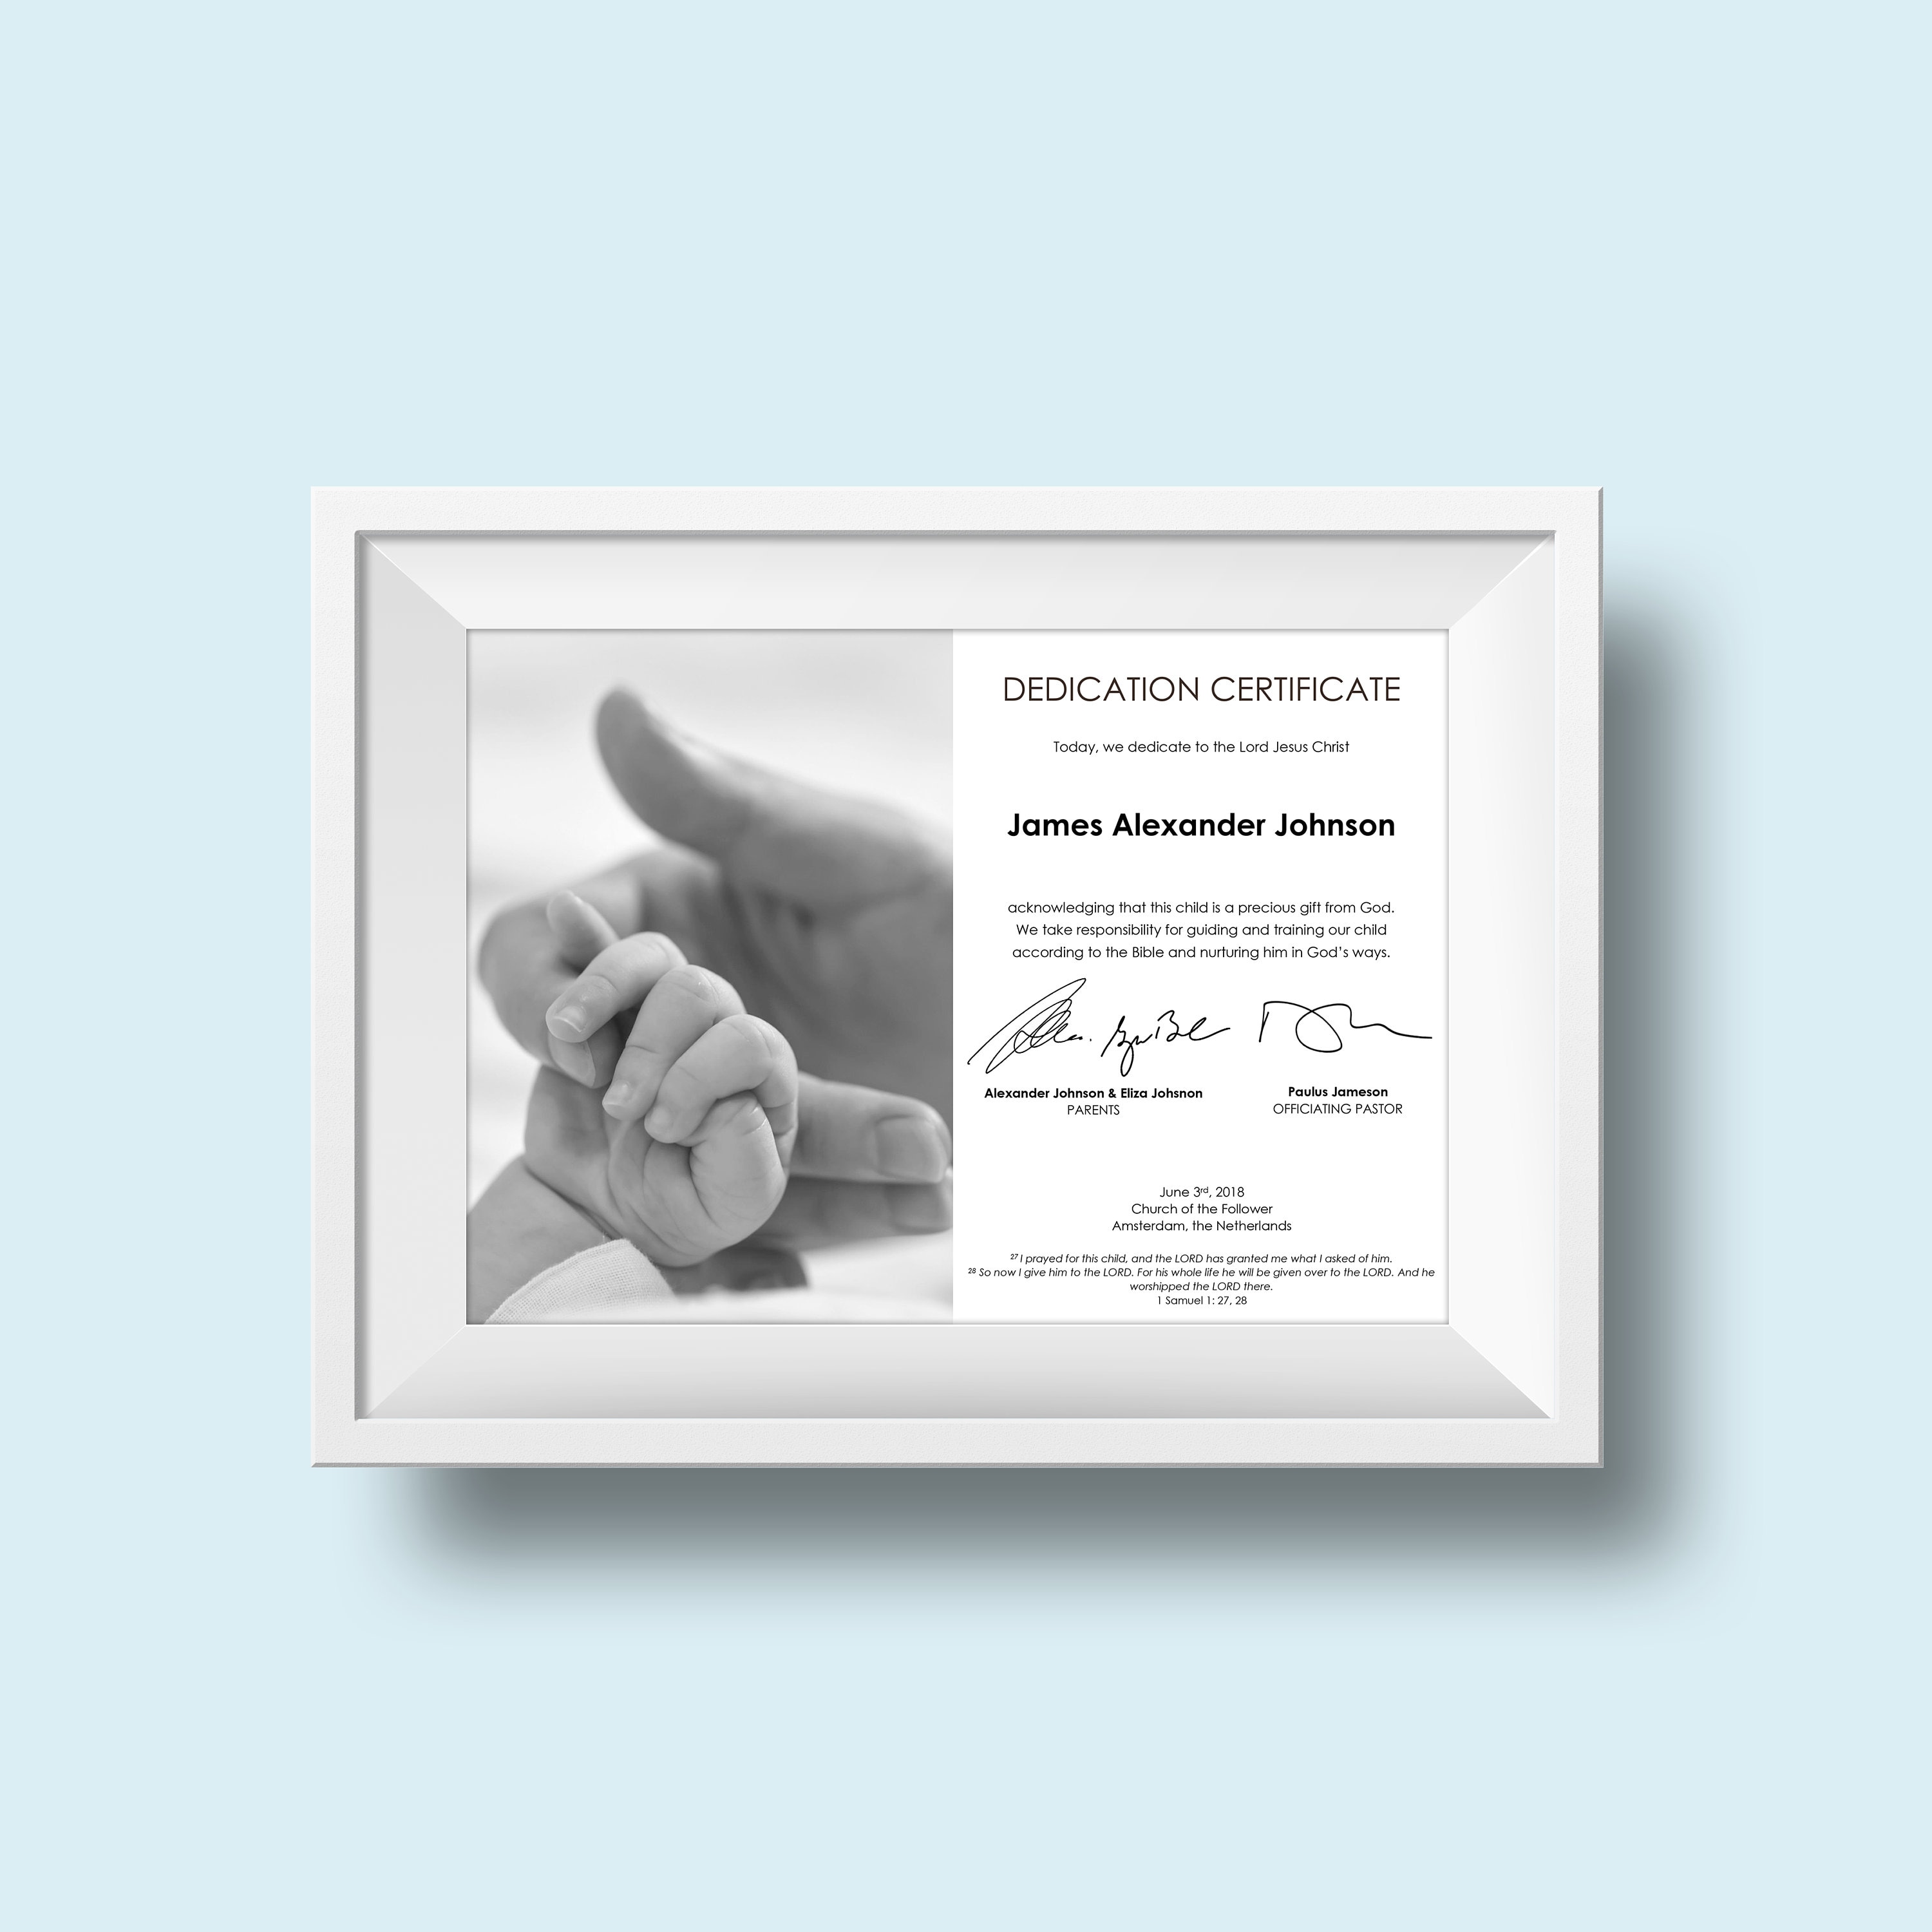 Baby Widmung Zertifikat  Vorlage  Taufe  Der Glaube  der Herr  Widmung  an den Herrn  DIY  Digitale Datei  Sofortiger Download  Einfach Pertaining To Baby Dedication Certificate Template